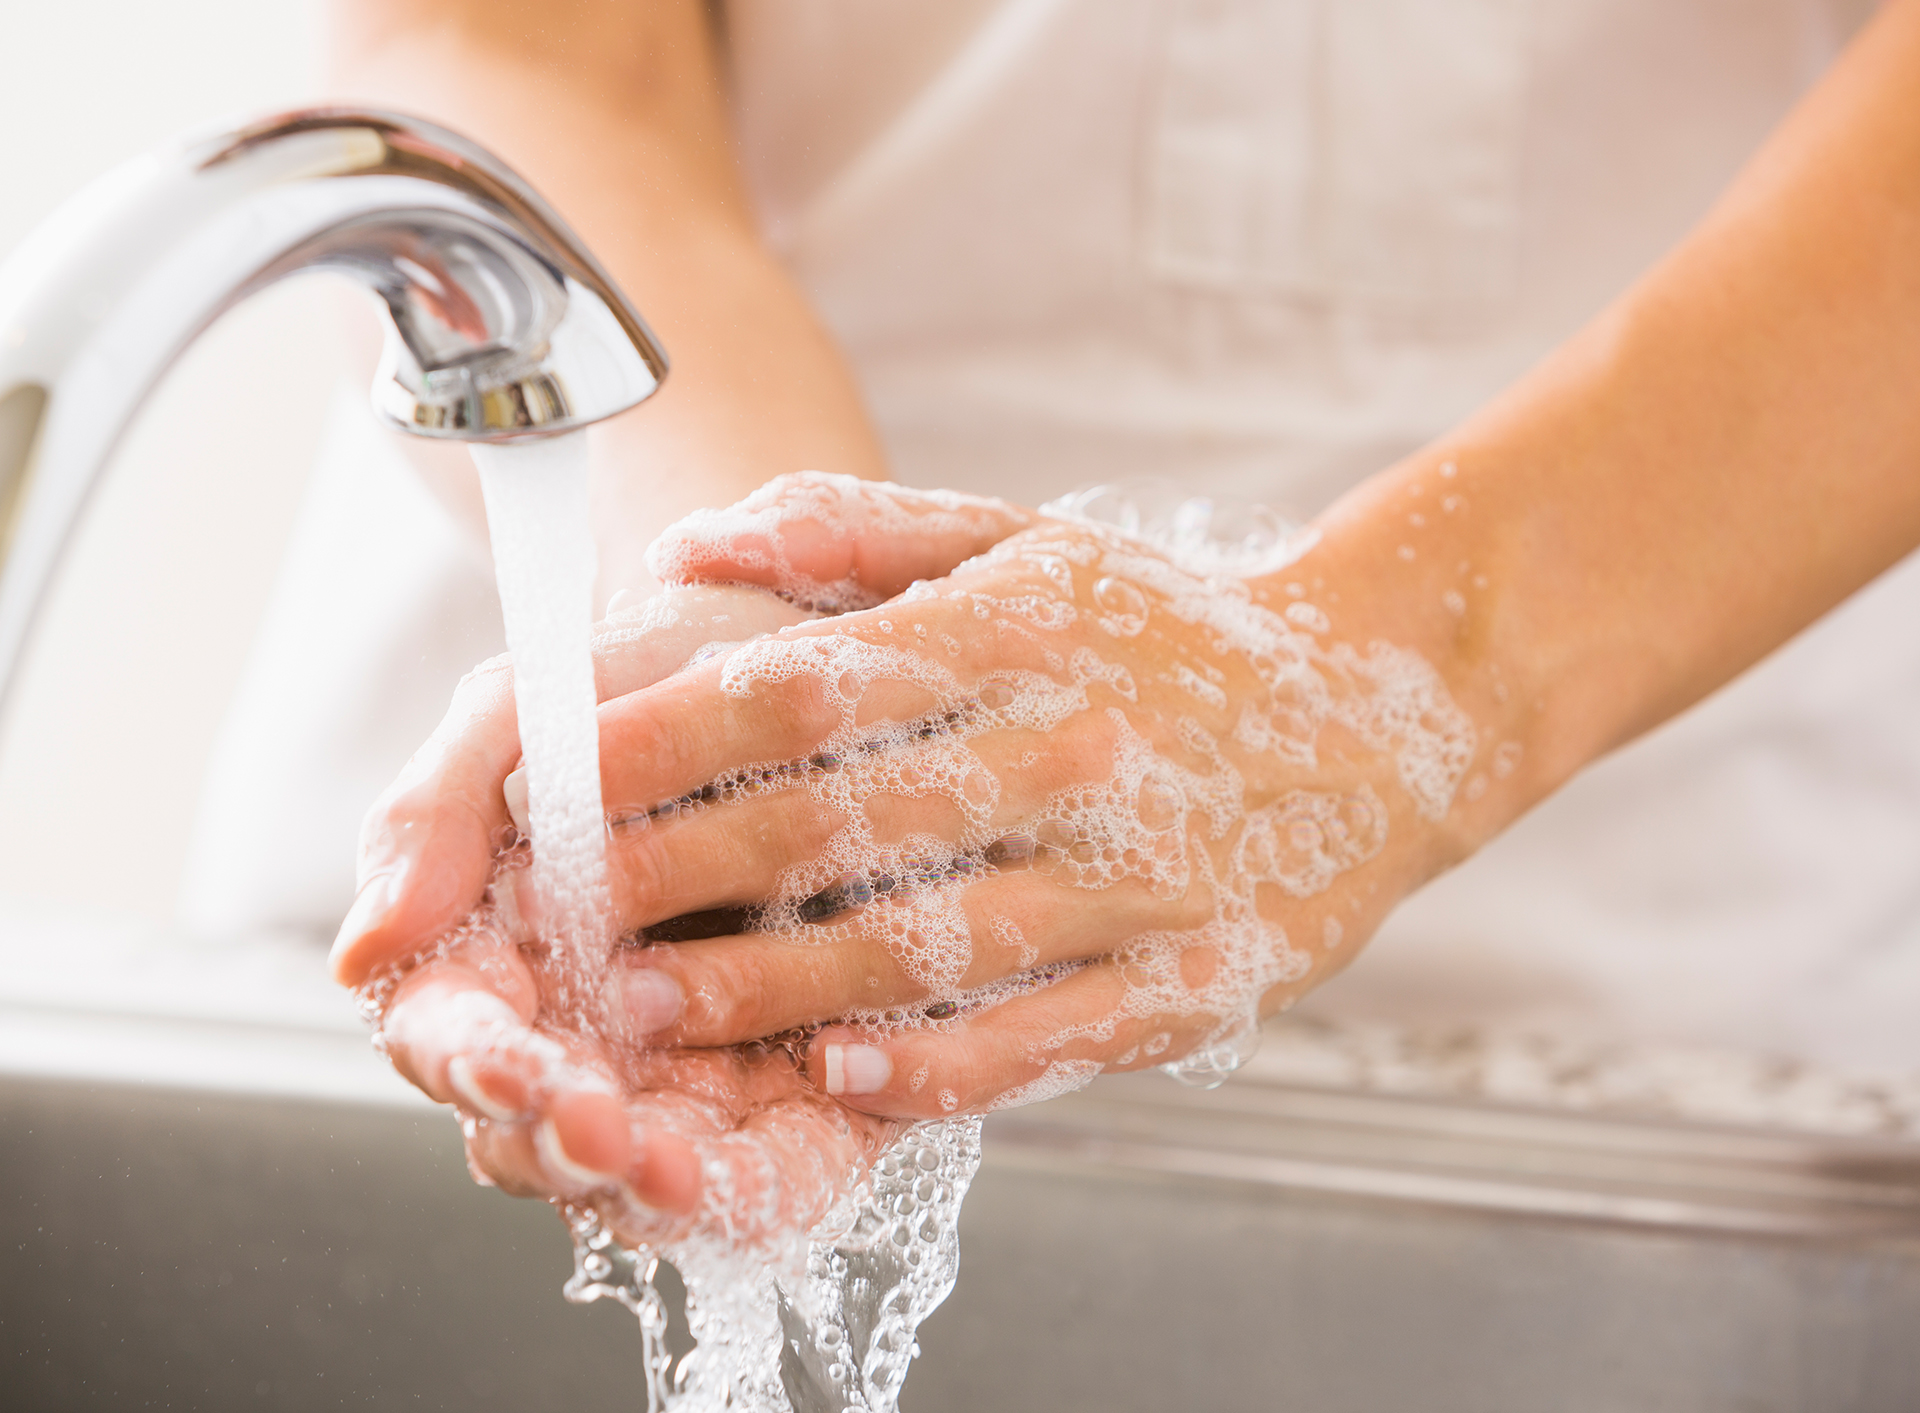 Nach dem Händewaschen auf die ricjhtige Pflege achten.